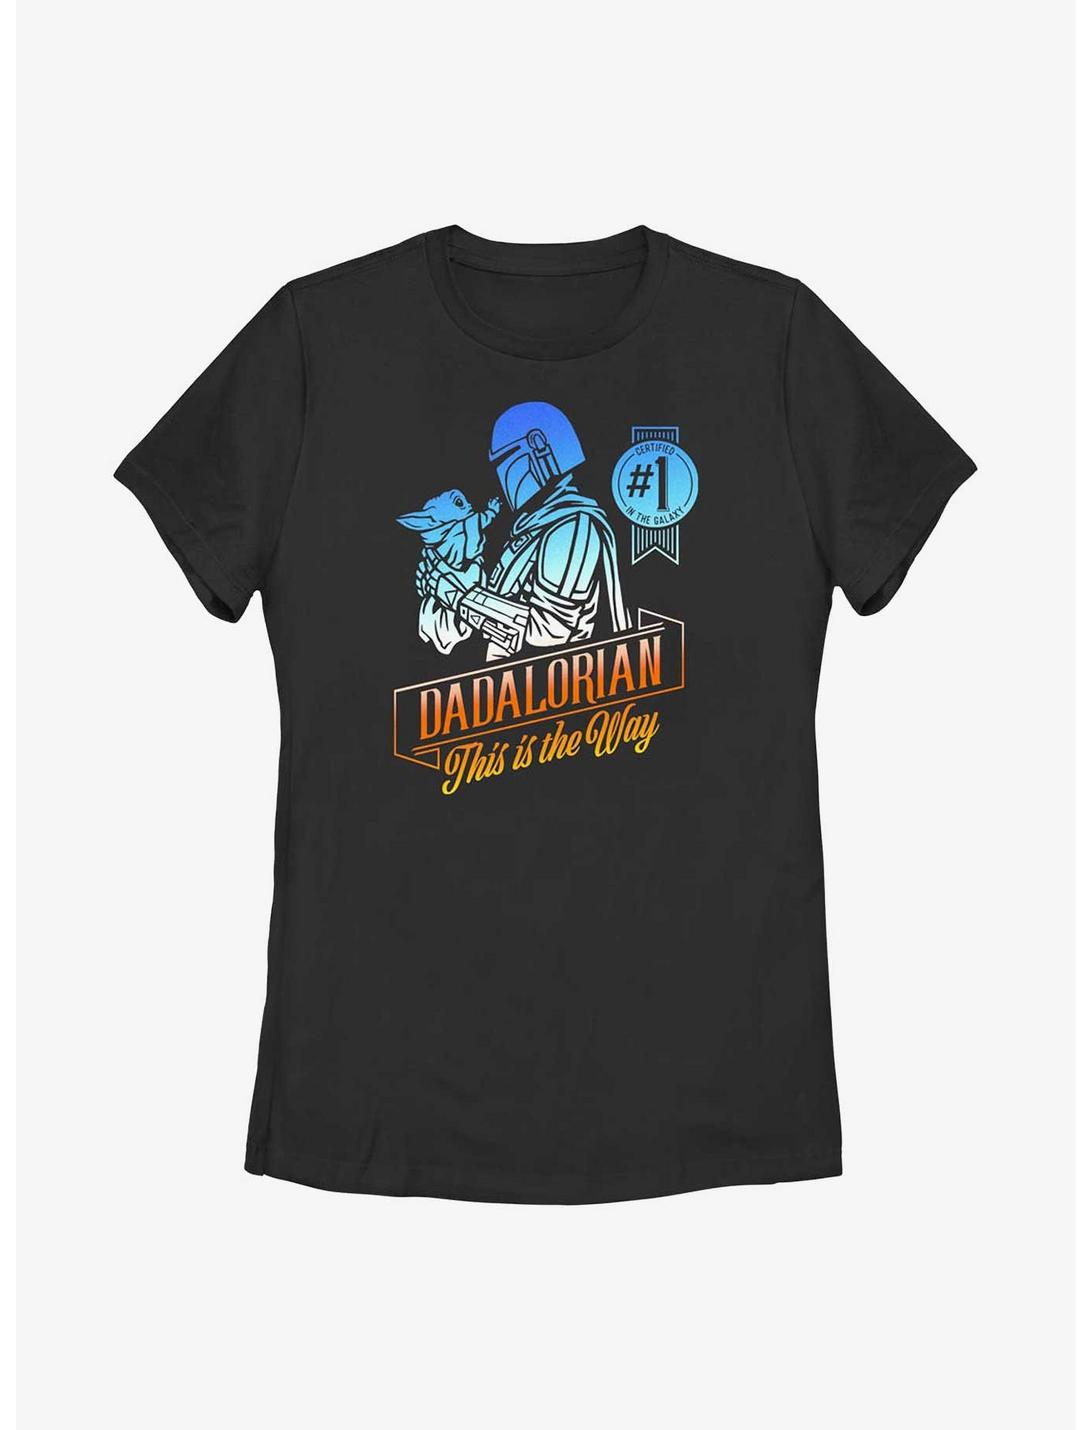 Star Wars The Mandalorian Certified Dadalorian Womens T-Shirt, BLACK, hi-res